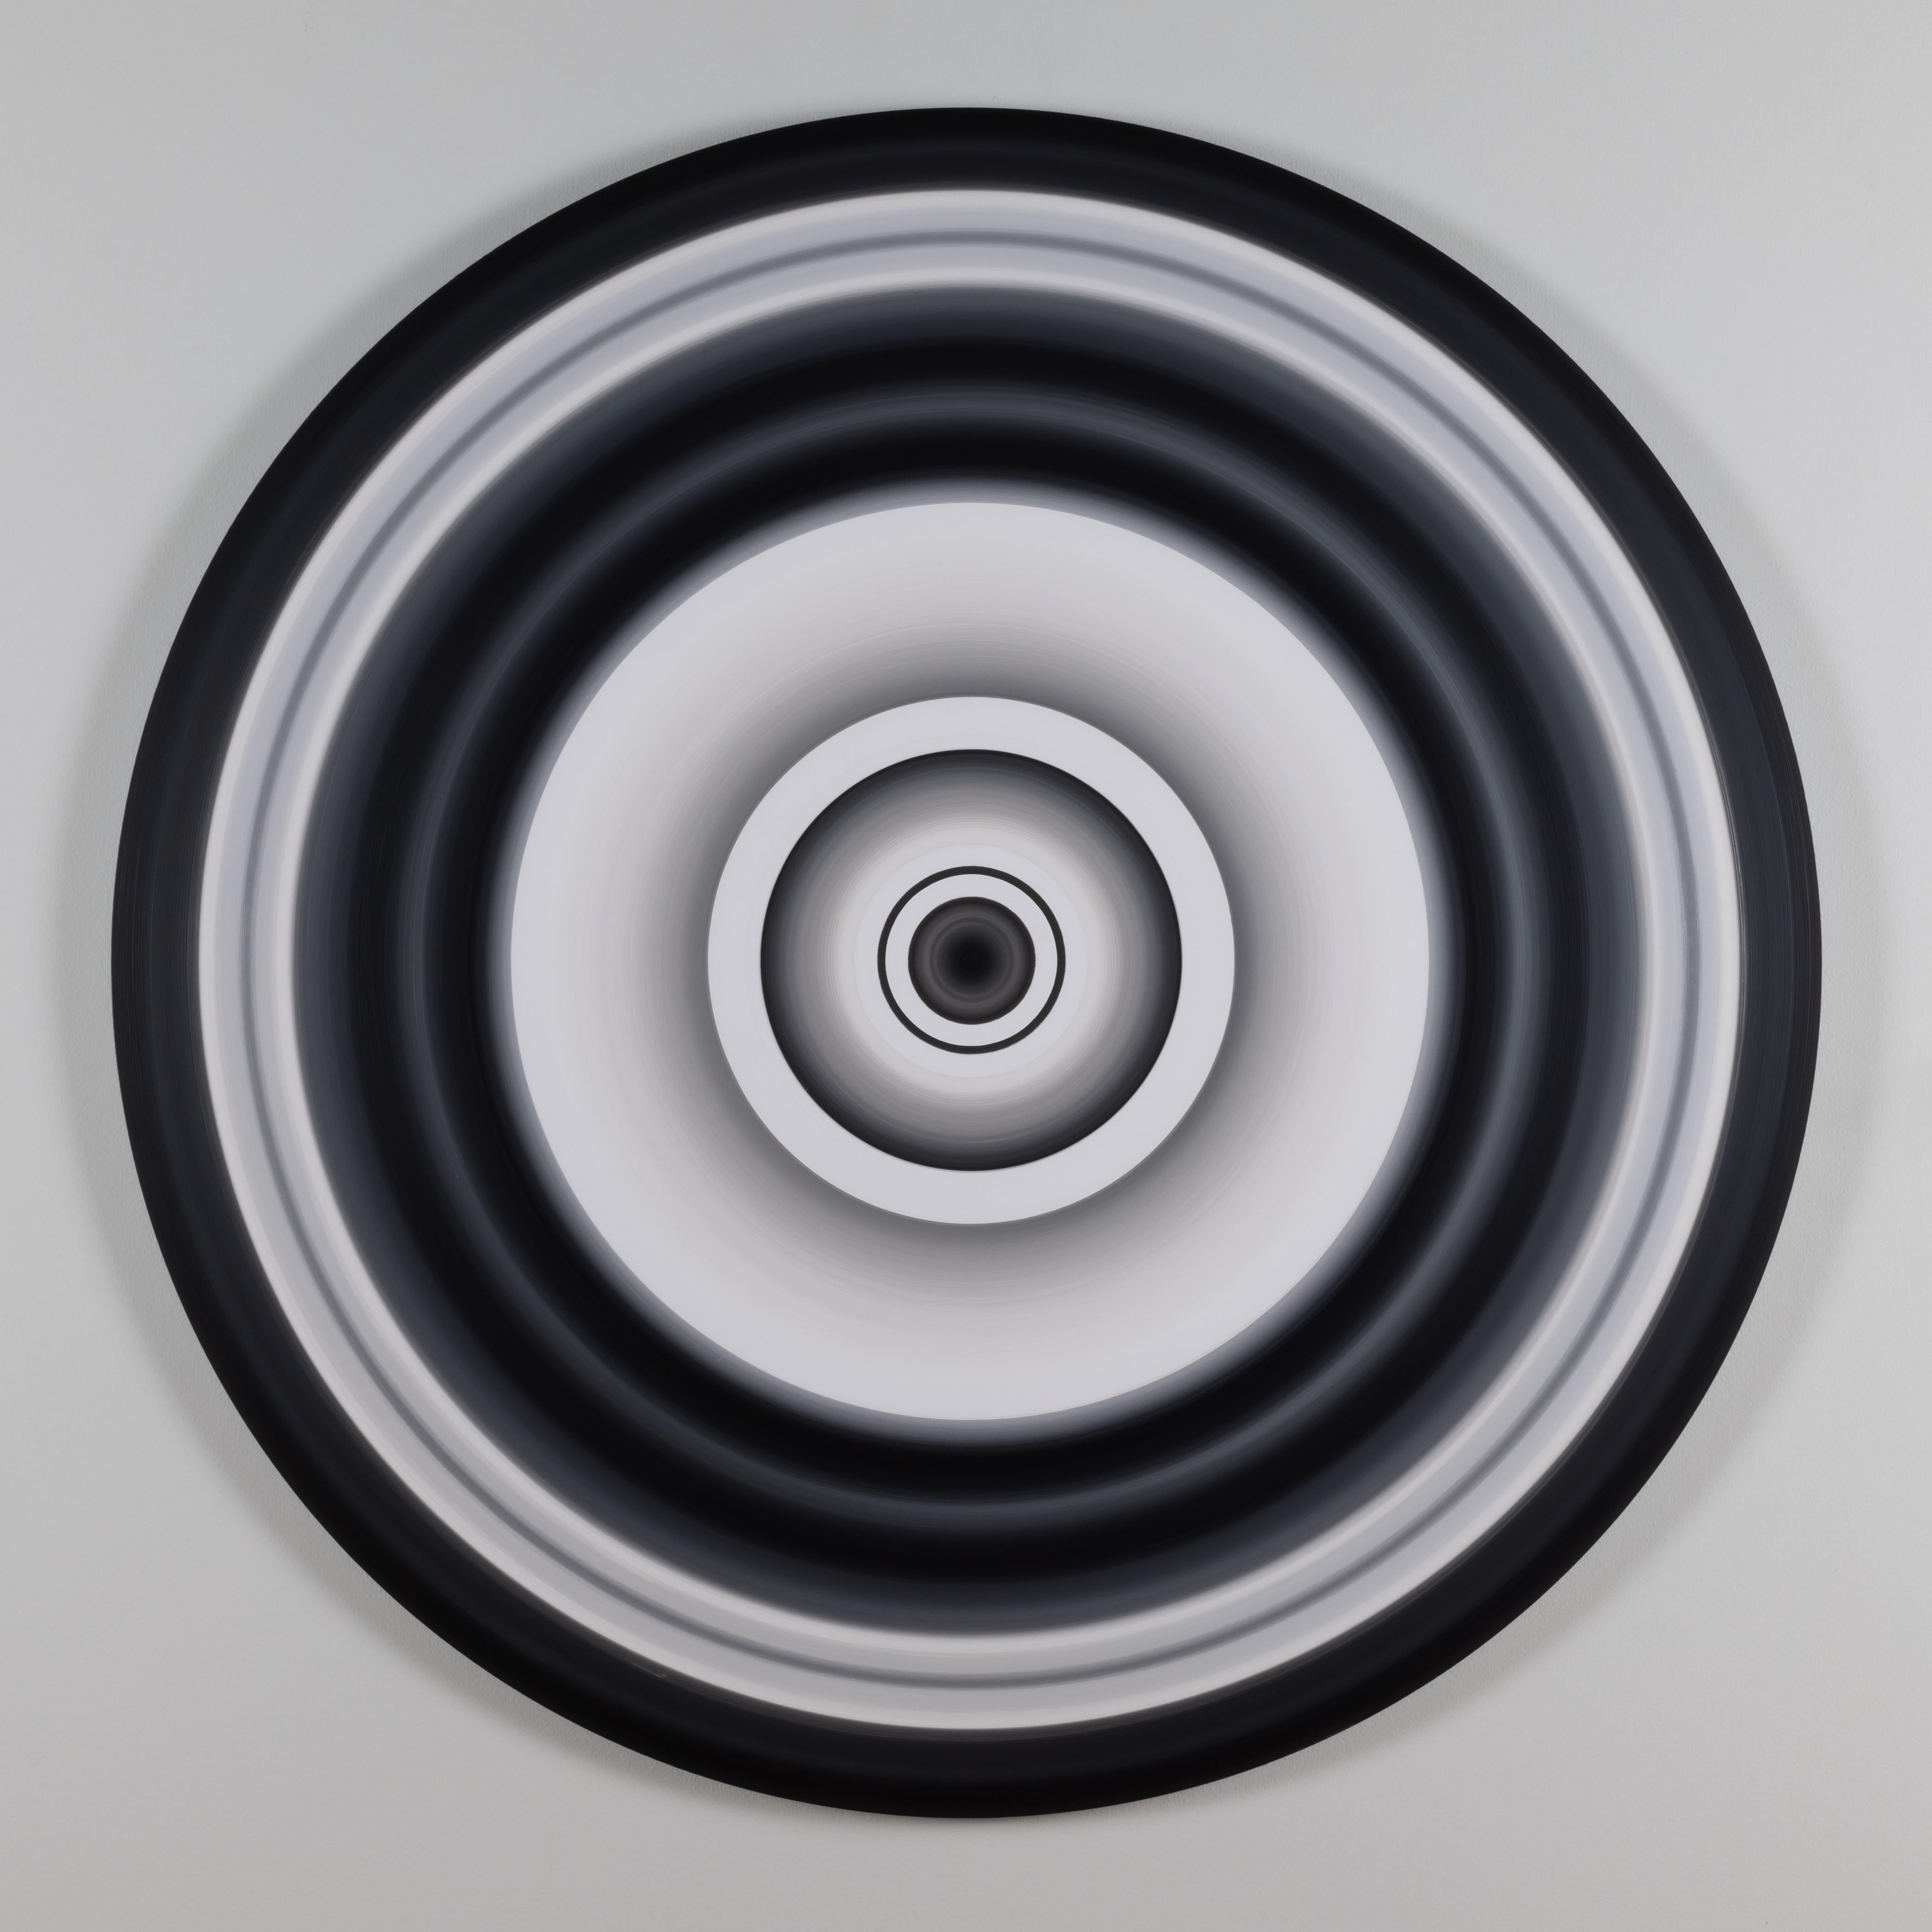 Medium: Acryl auf Aluminium mit eingelassenem Schweberahmen

Die Geschichte von Eric Moore beginnt nicht wie die vieler etablierter Künstler. Im Gegensatz zu vielen seiner Künstlerkollegen hat Moore nicht von klein auf gezeichnet und Kunst